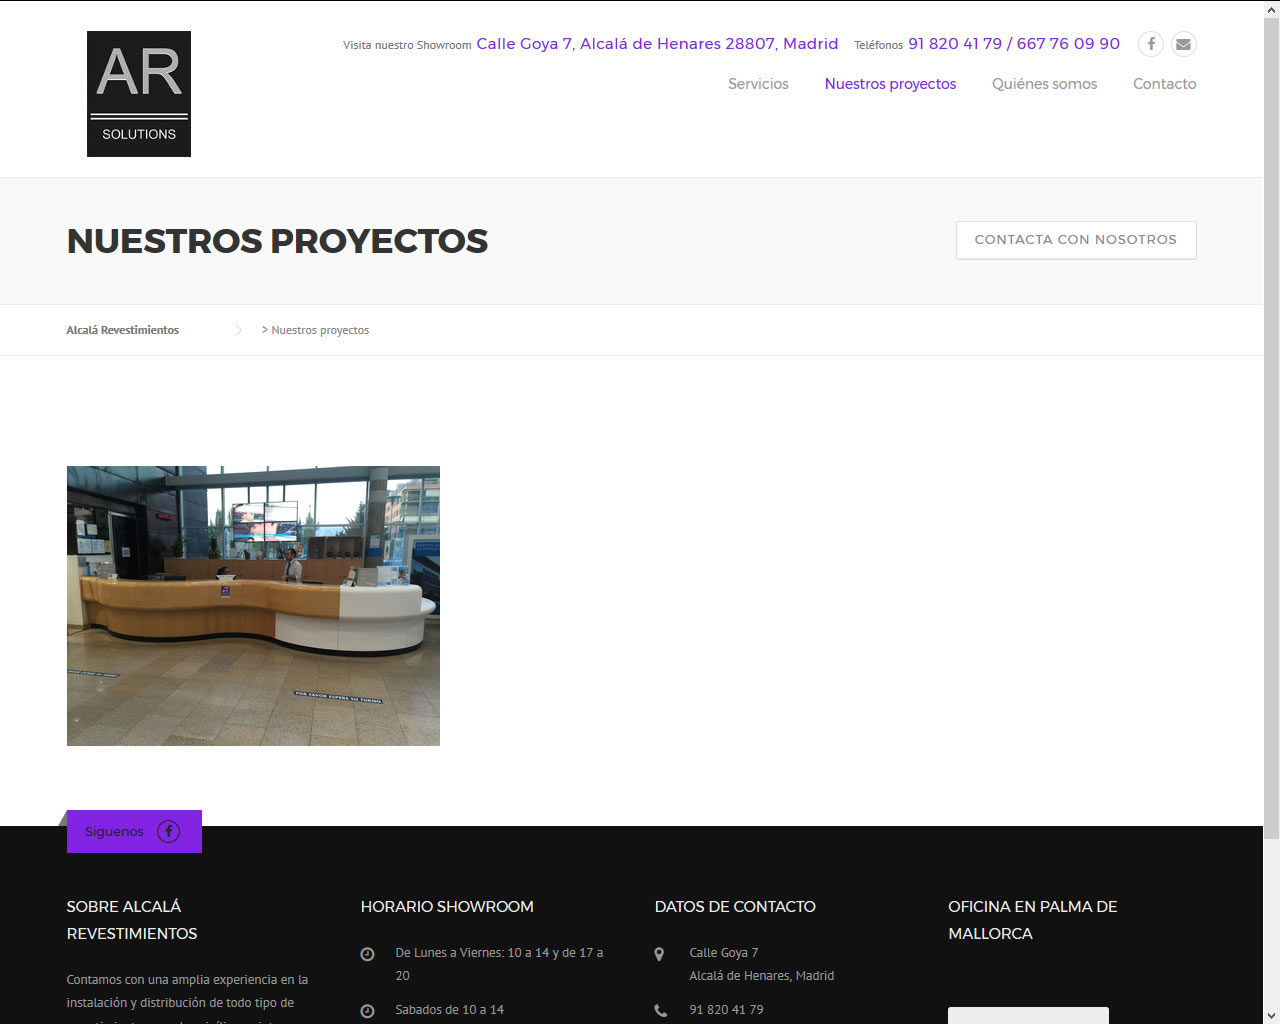 Proyectos - Alcalá Revestimientos